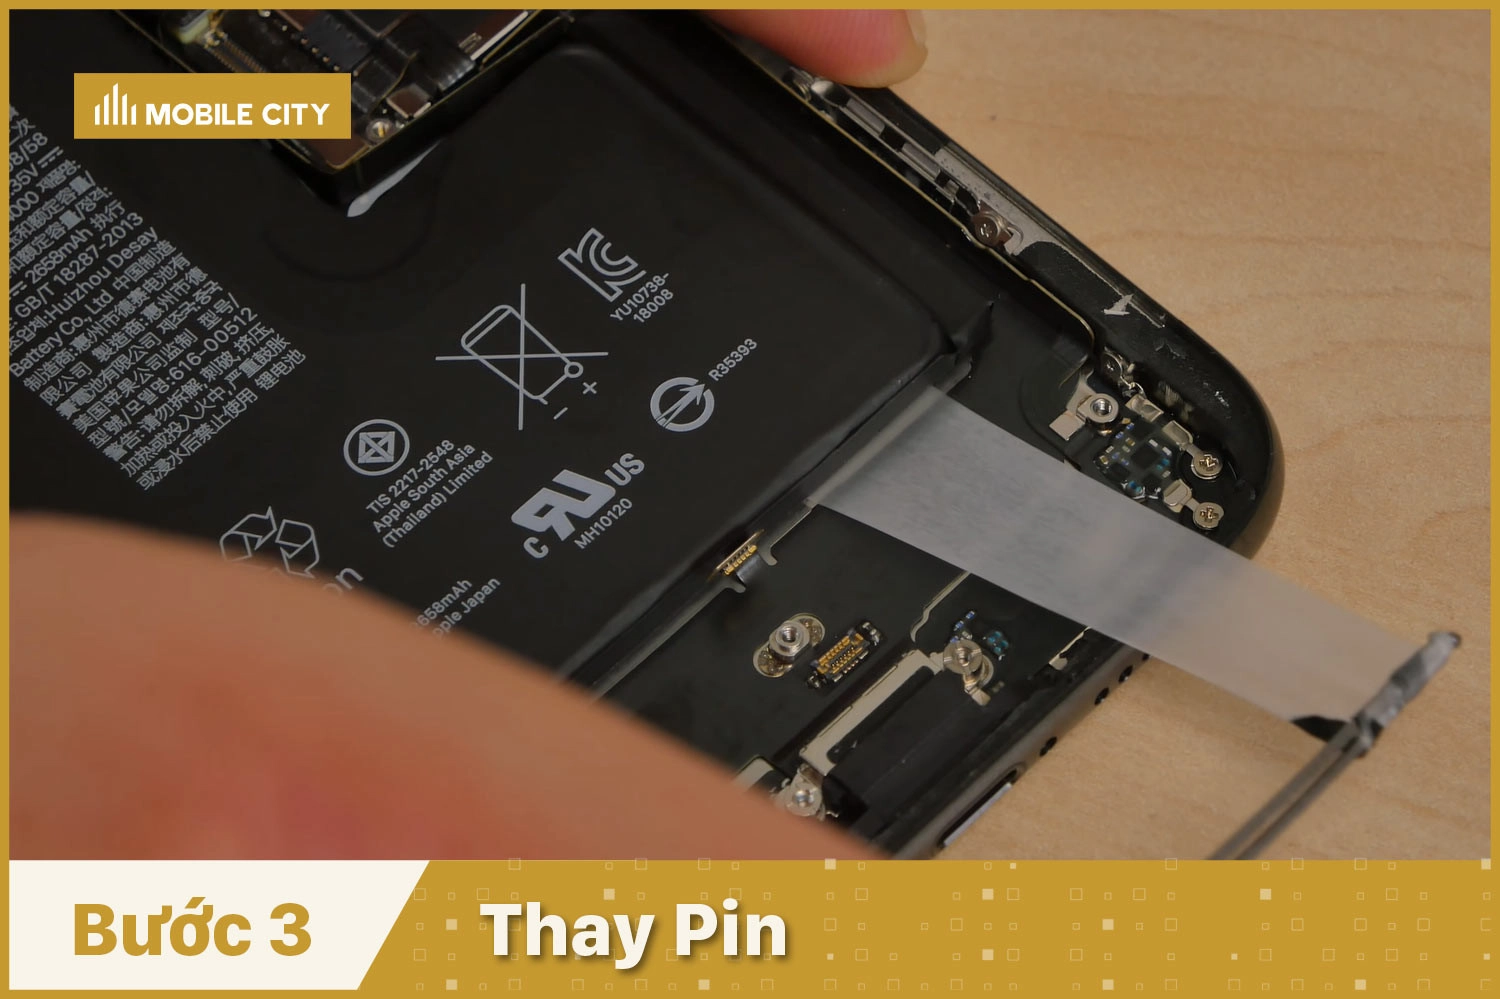 Thay Pin iPhone XS, thay Pin